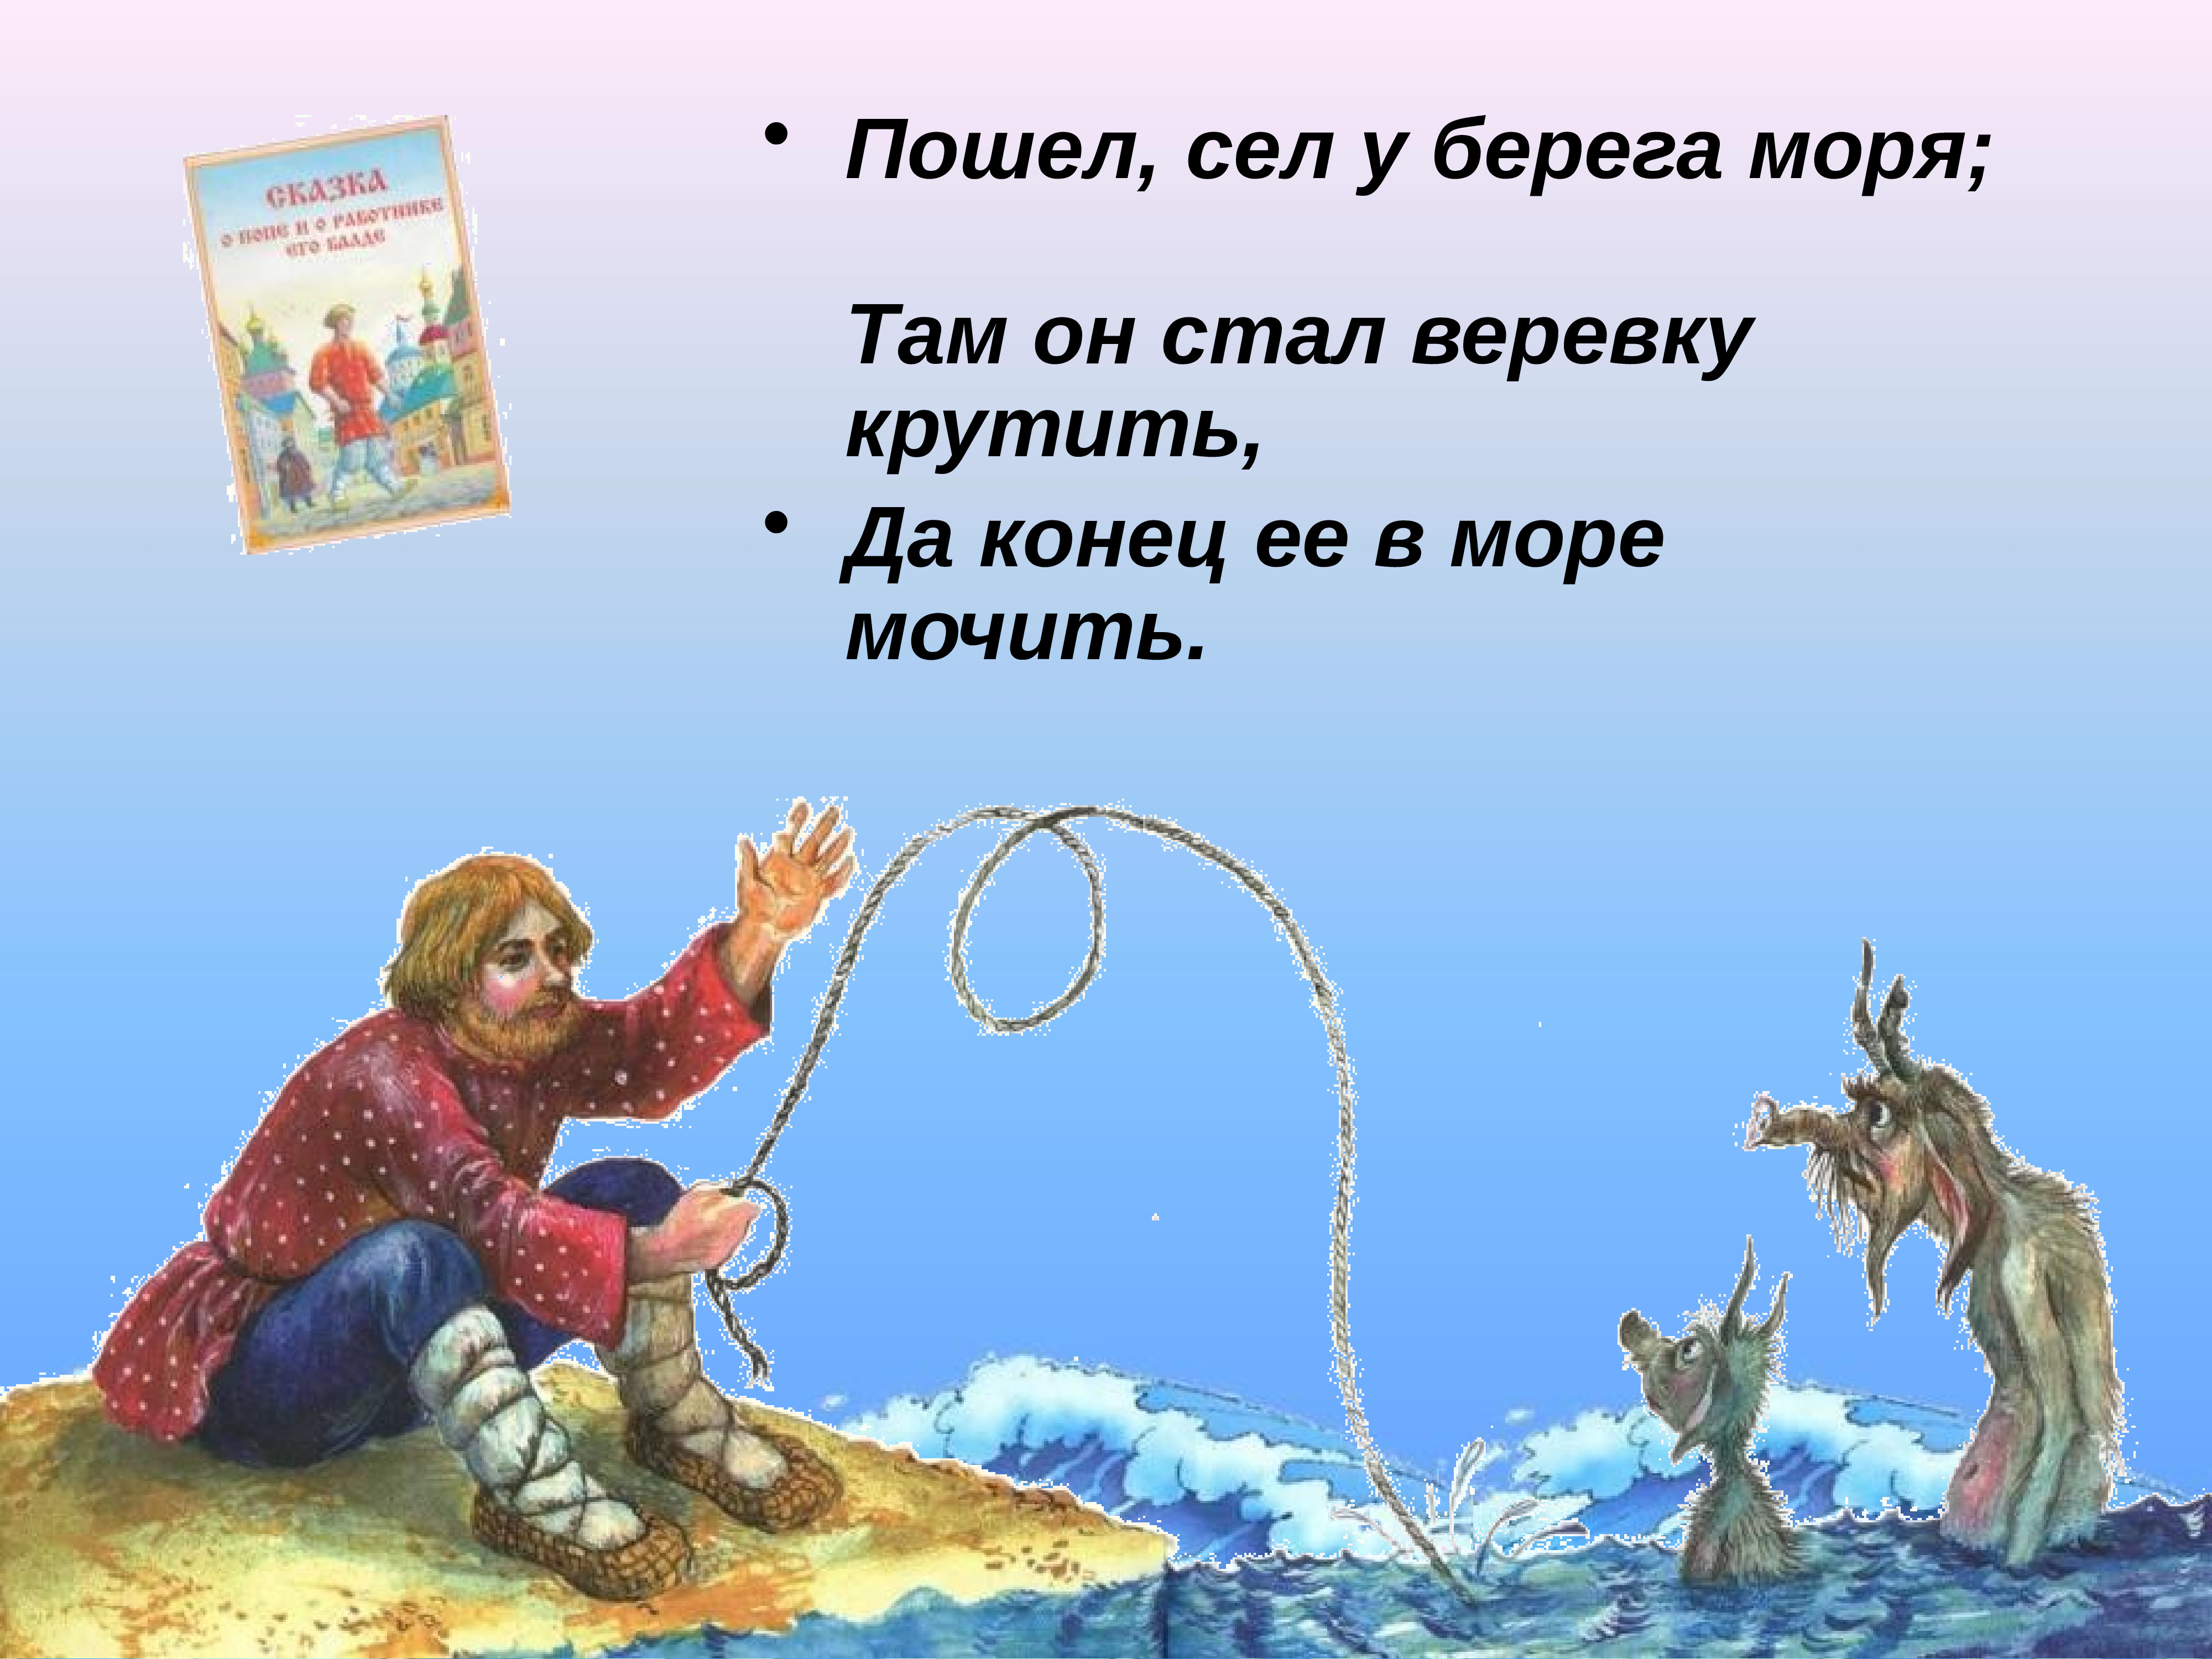 Презентация по сказкам Пушкина